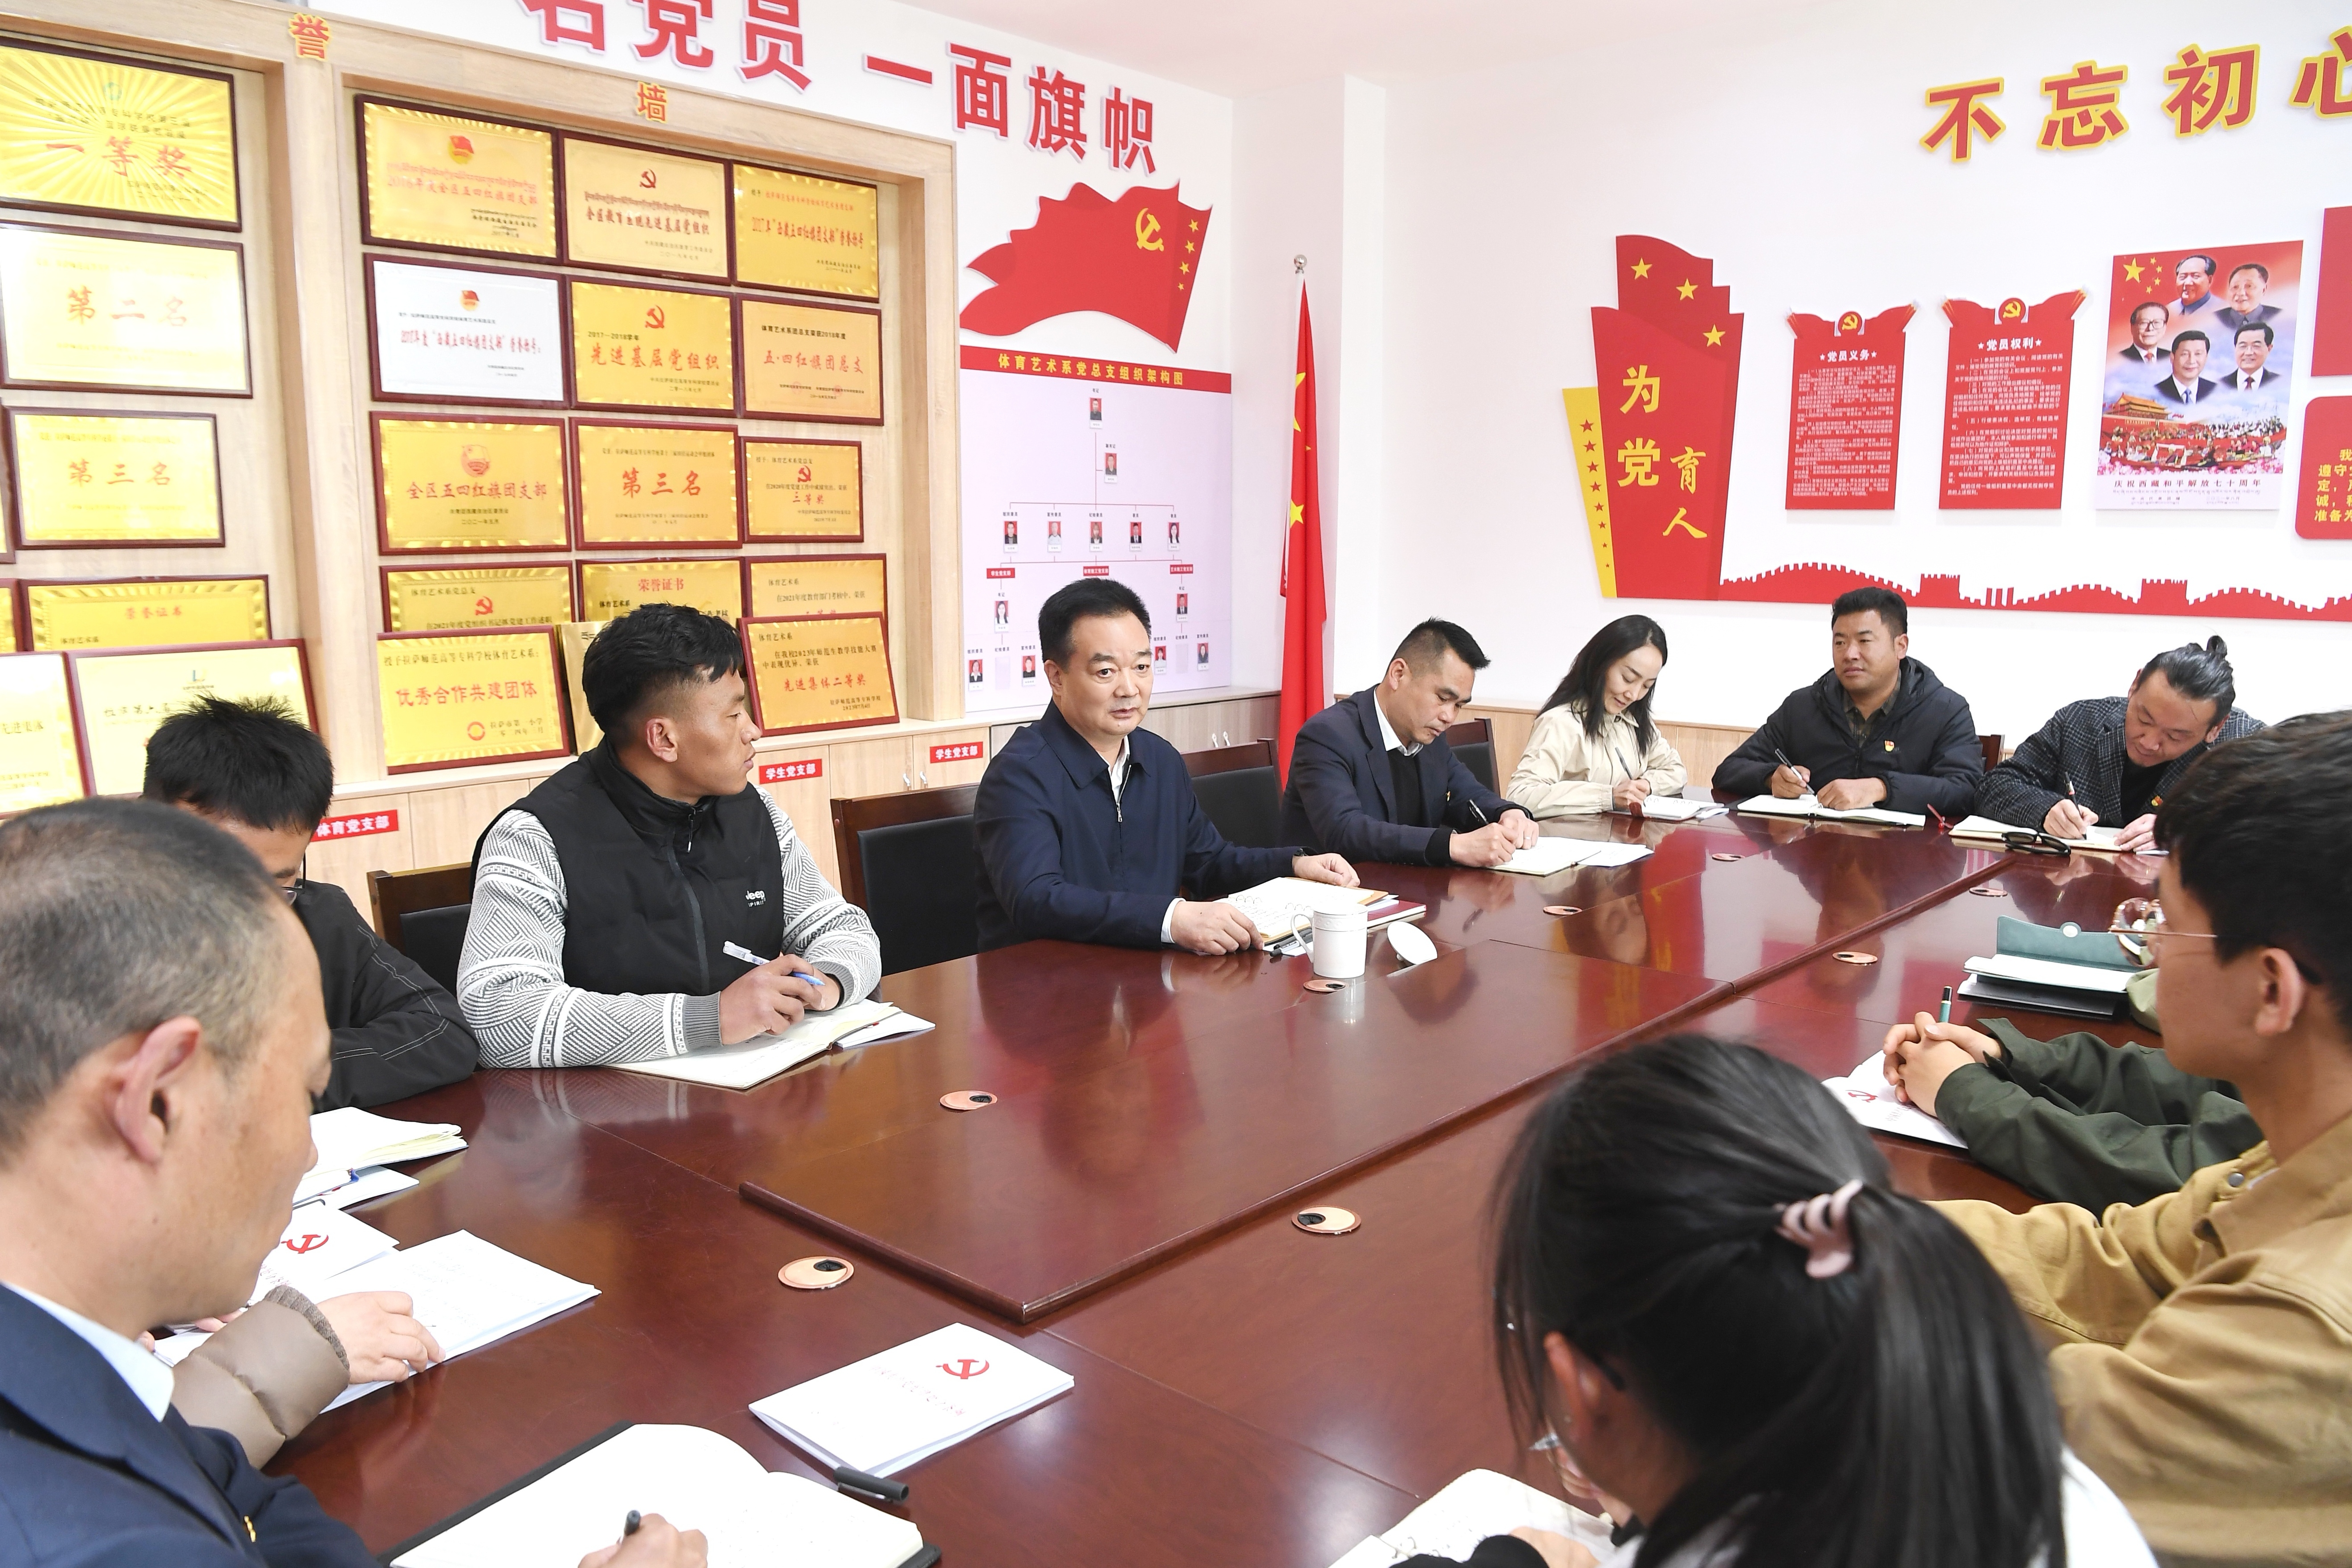 王君正与我区青年学生代表交流座谈 勉励广大青年努力做社会主义现代化新西藏建设的接班人